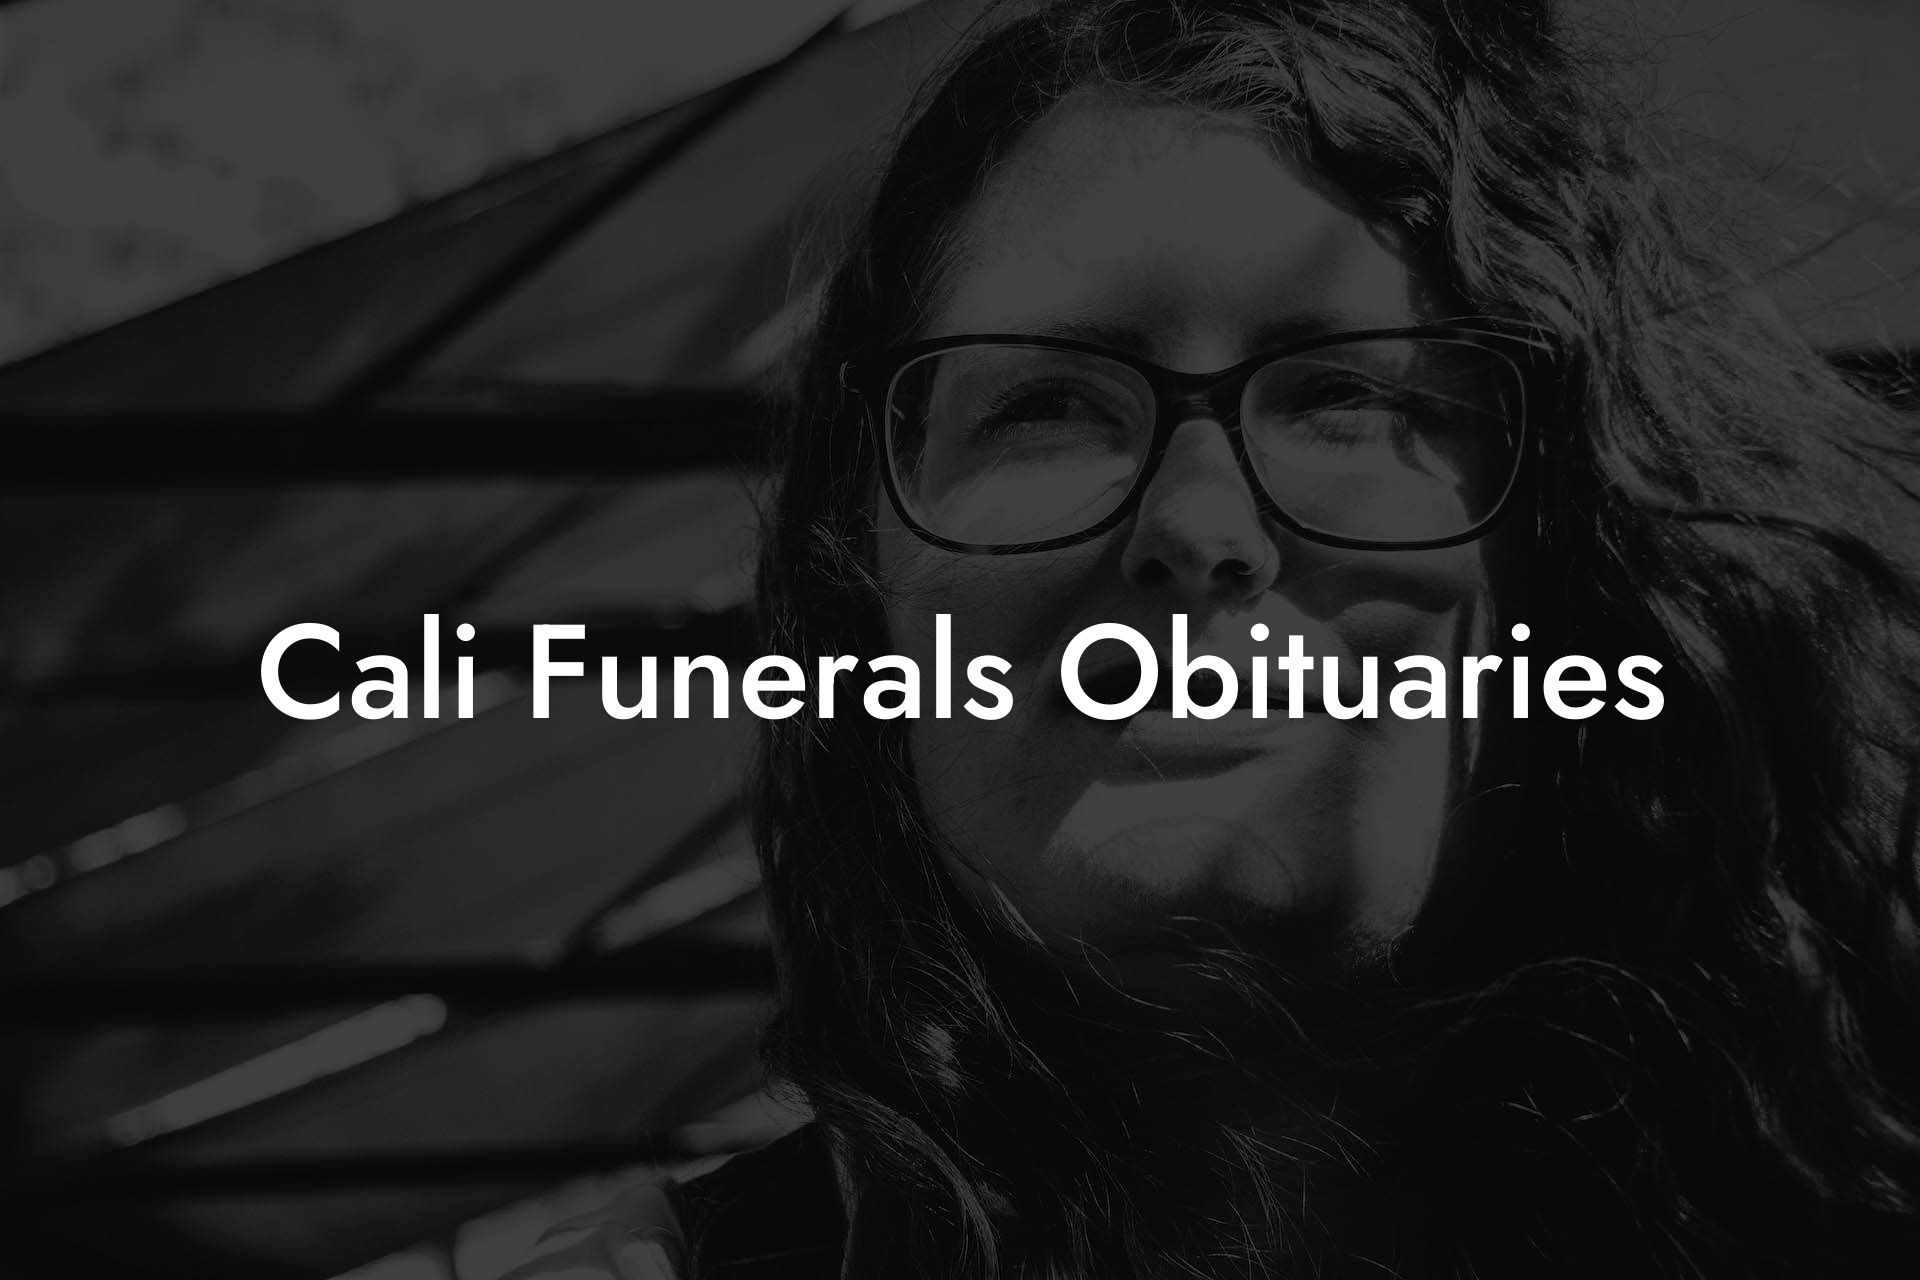 Cali Funerals Obituaries